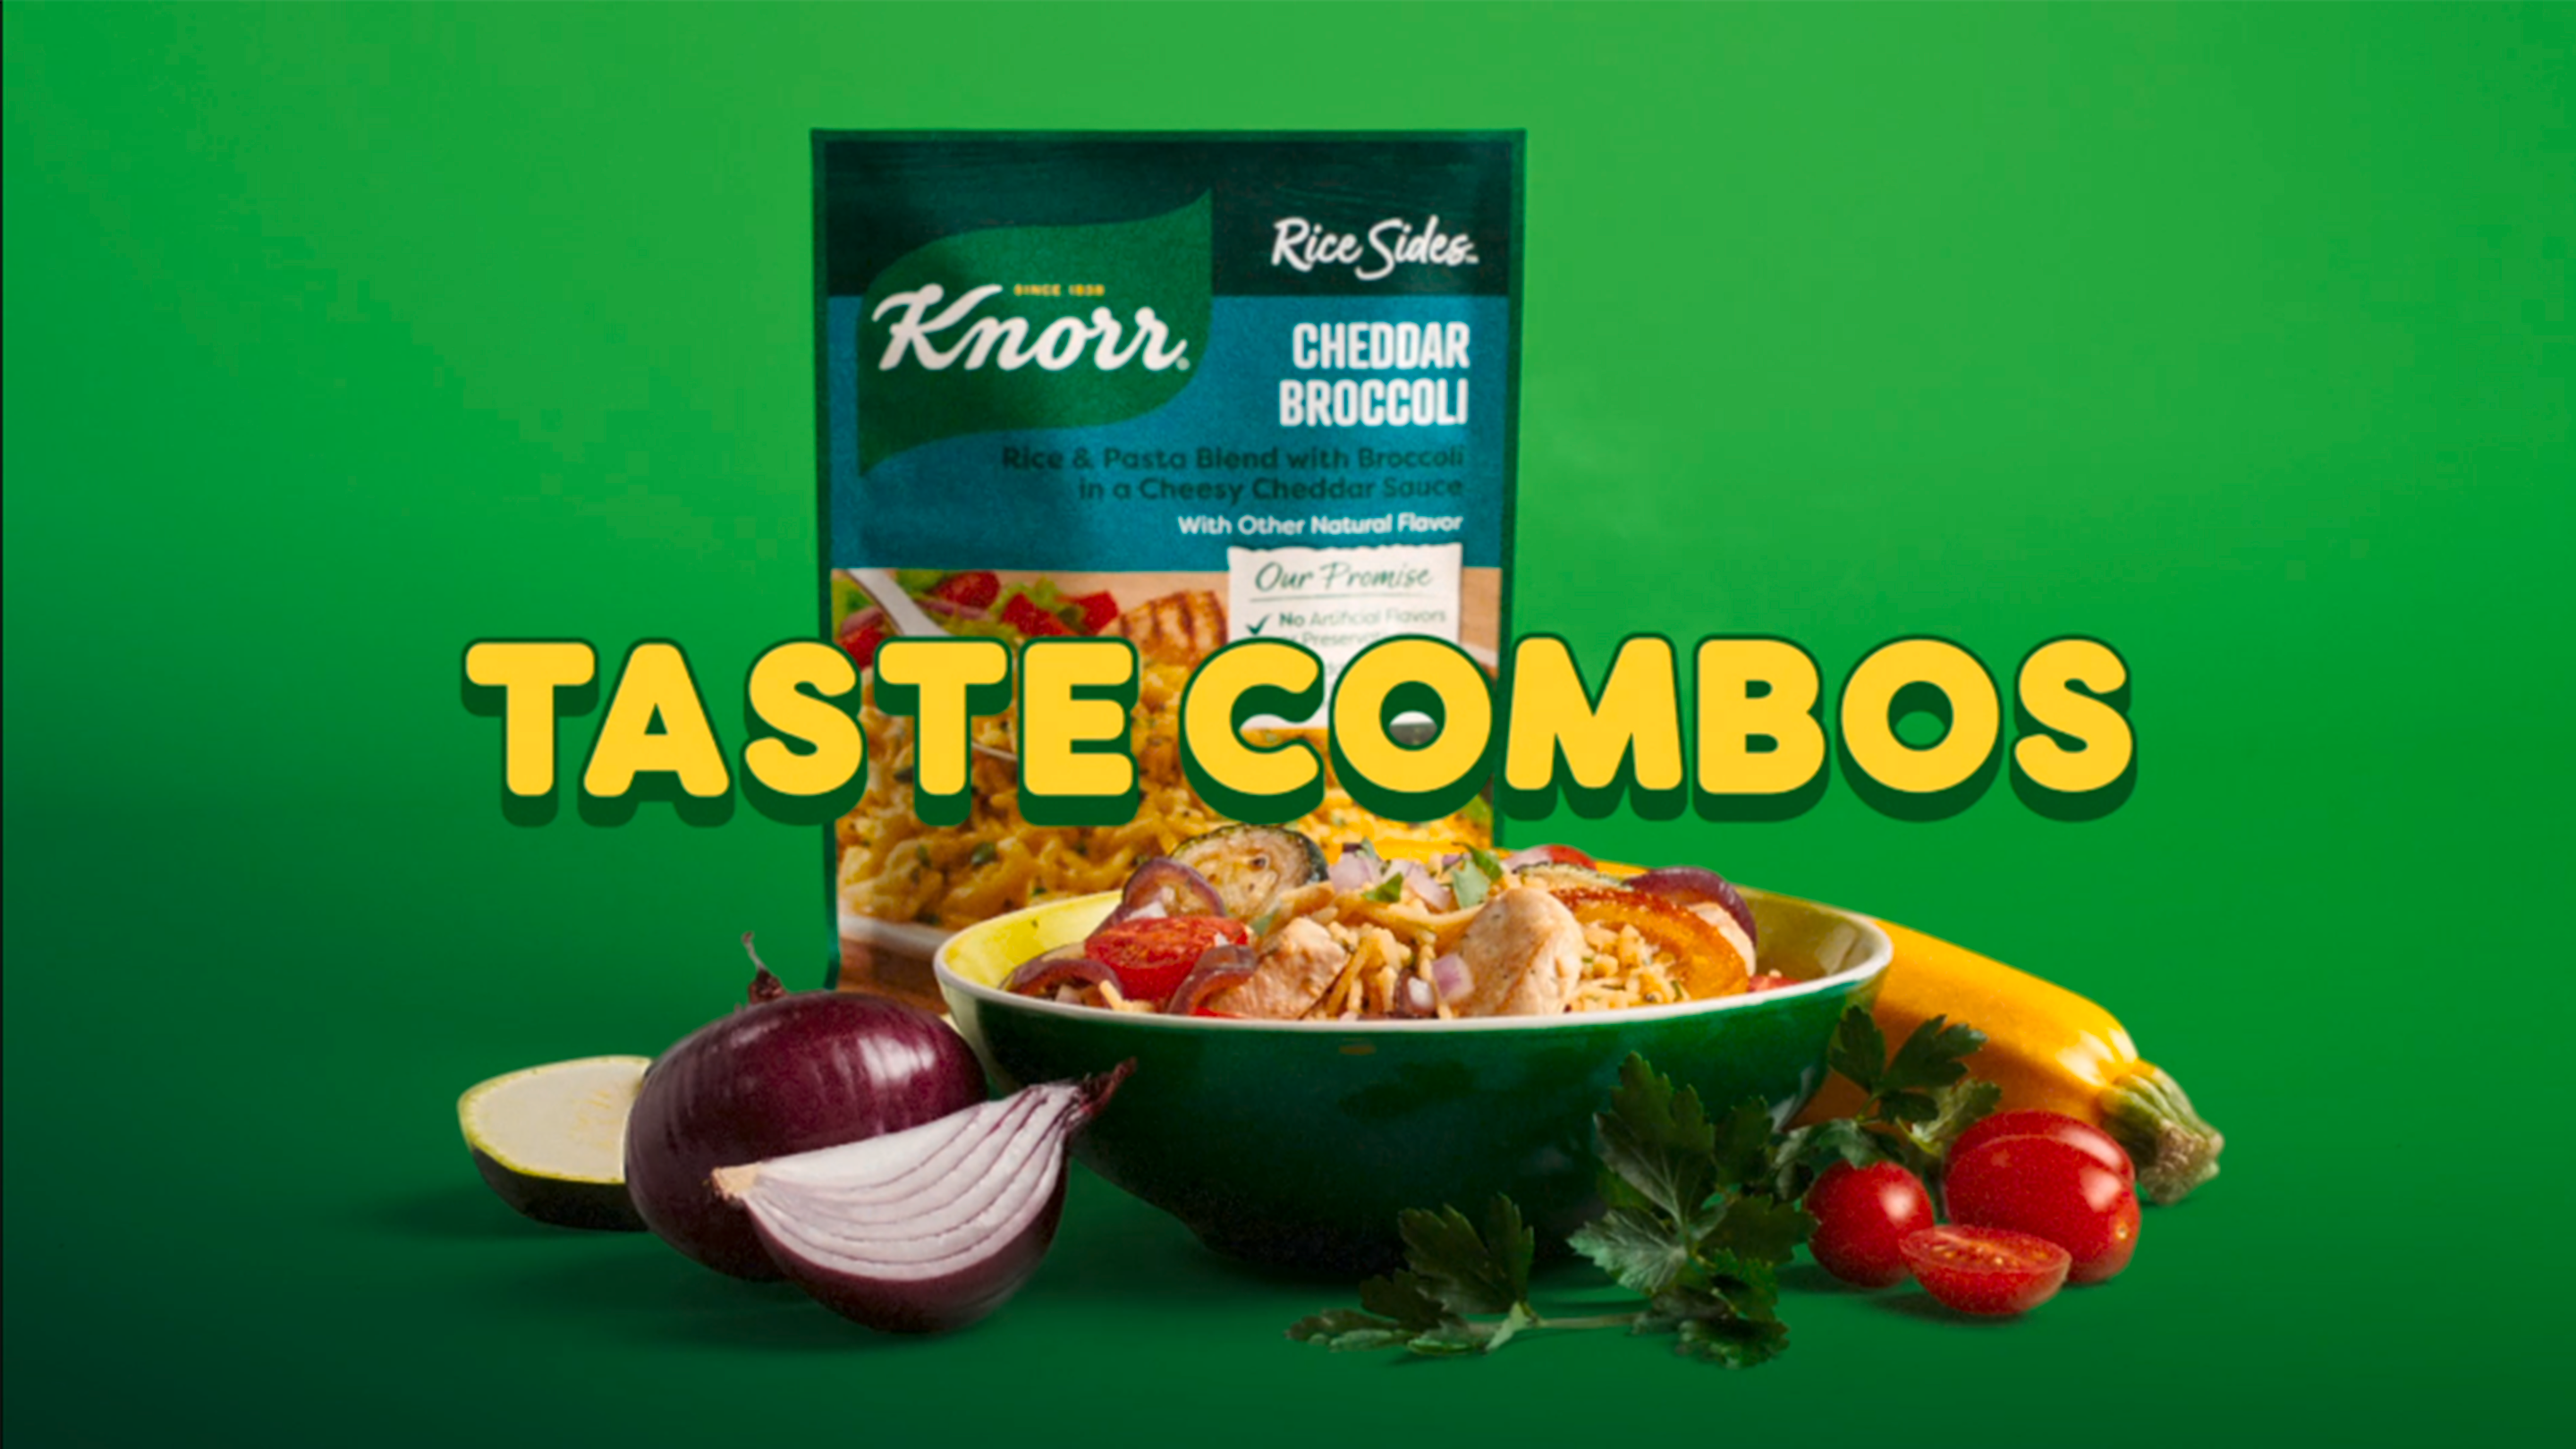 Knorr Taste Combos Rice Sides Cheddar Broccoli